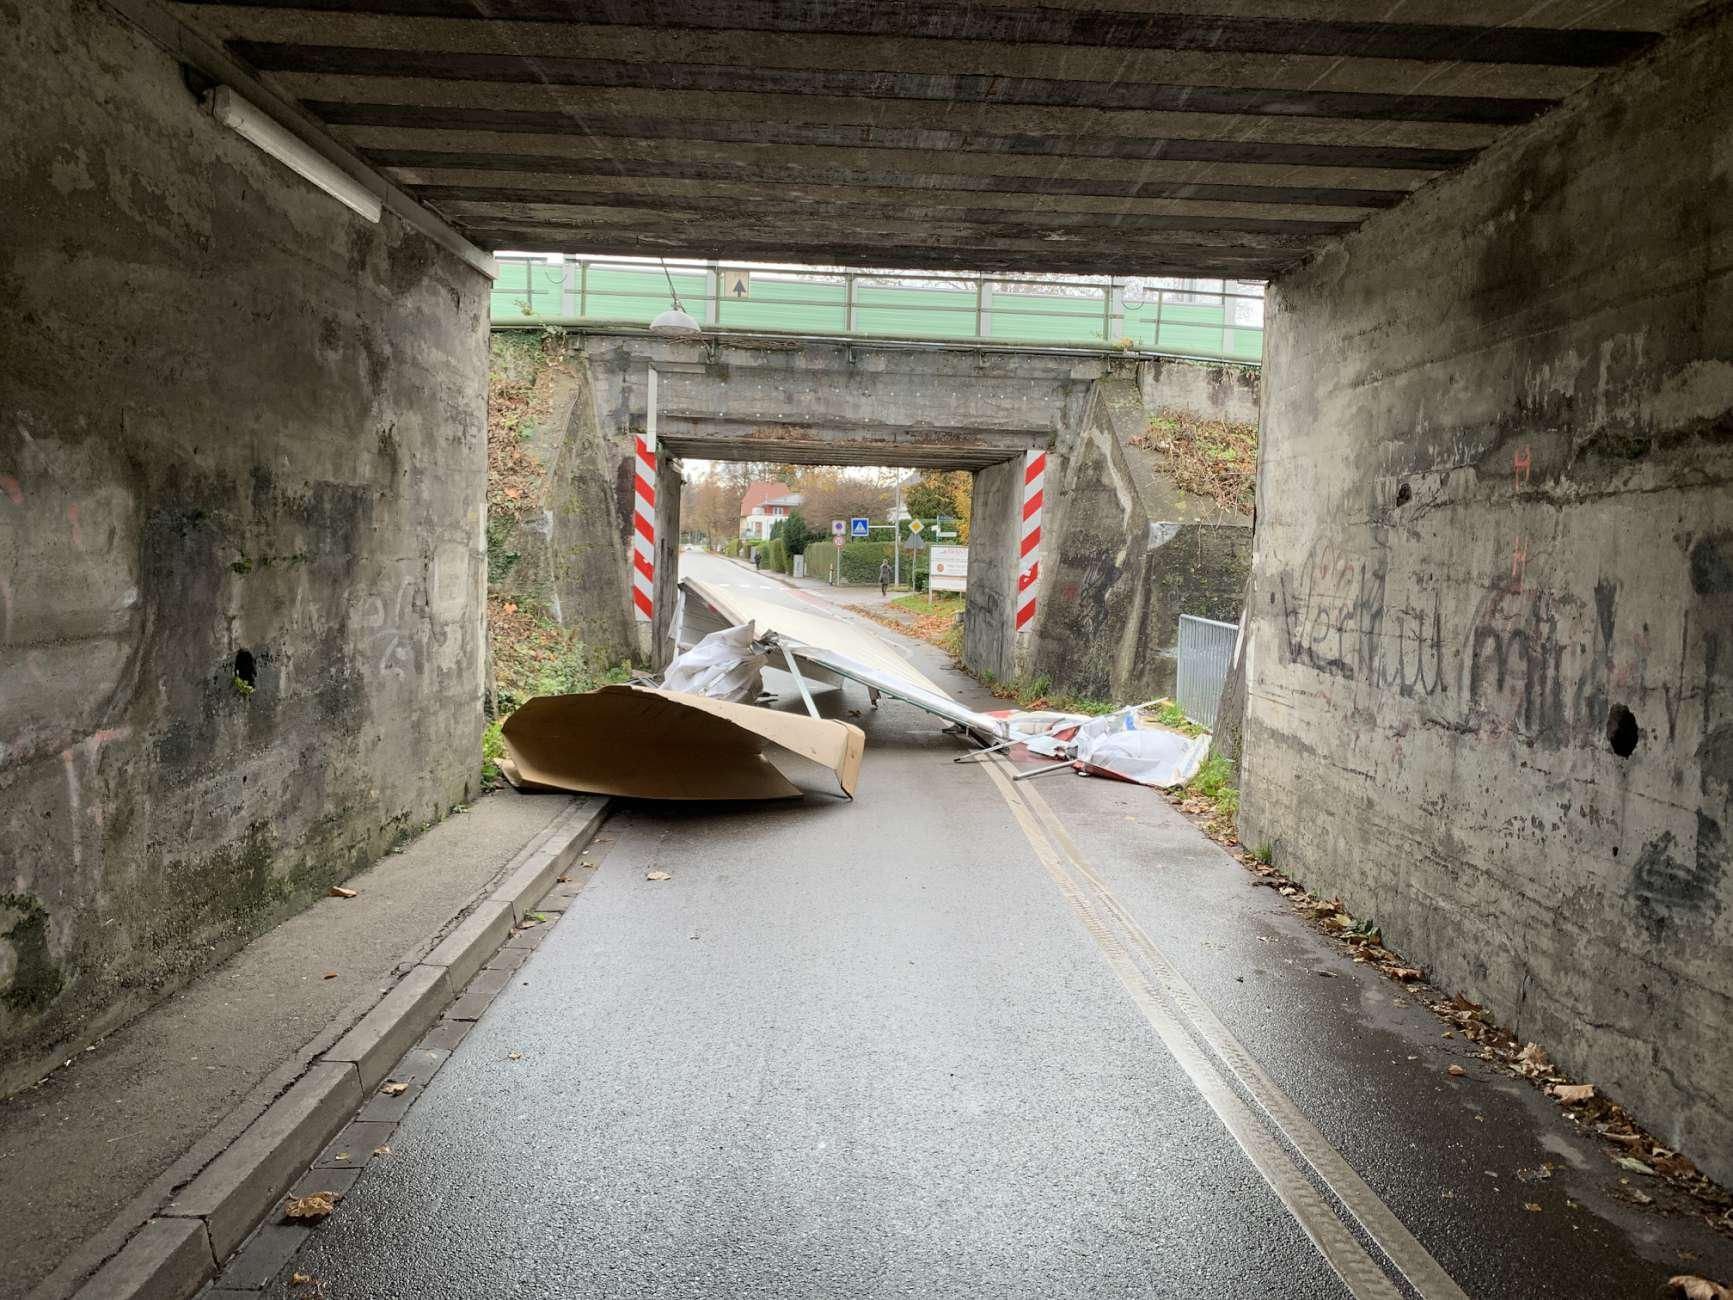 Fahrer unverletzt: Schreck in Lindau: Eisplatte kracht von LKW